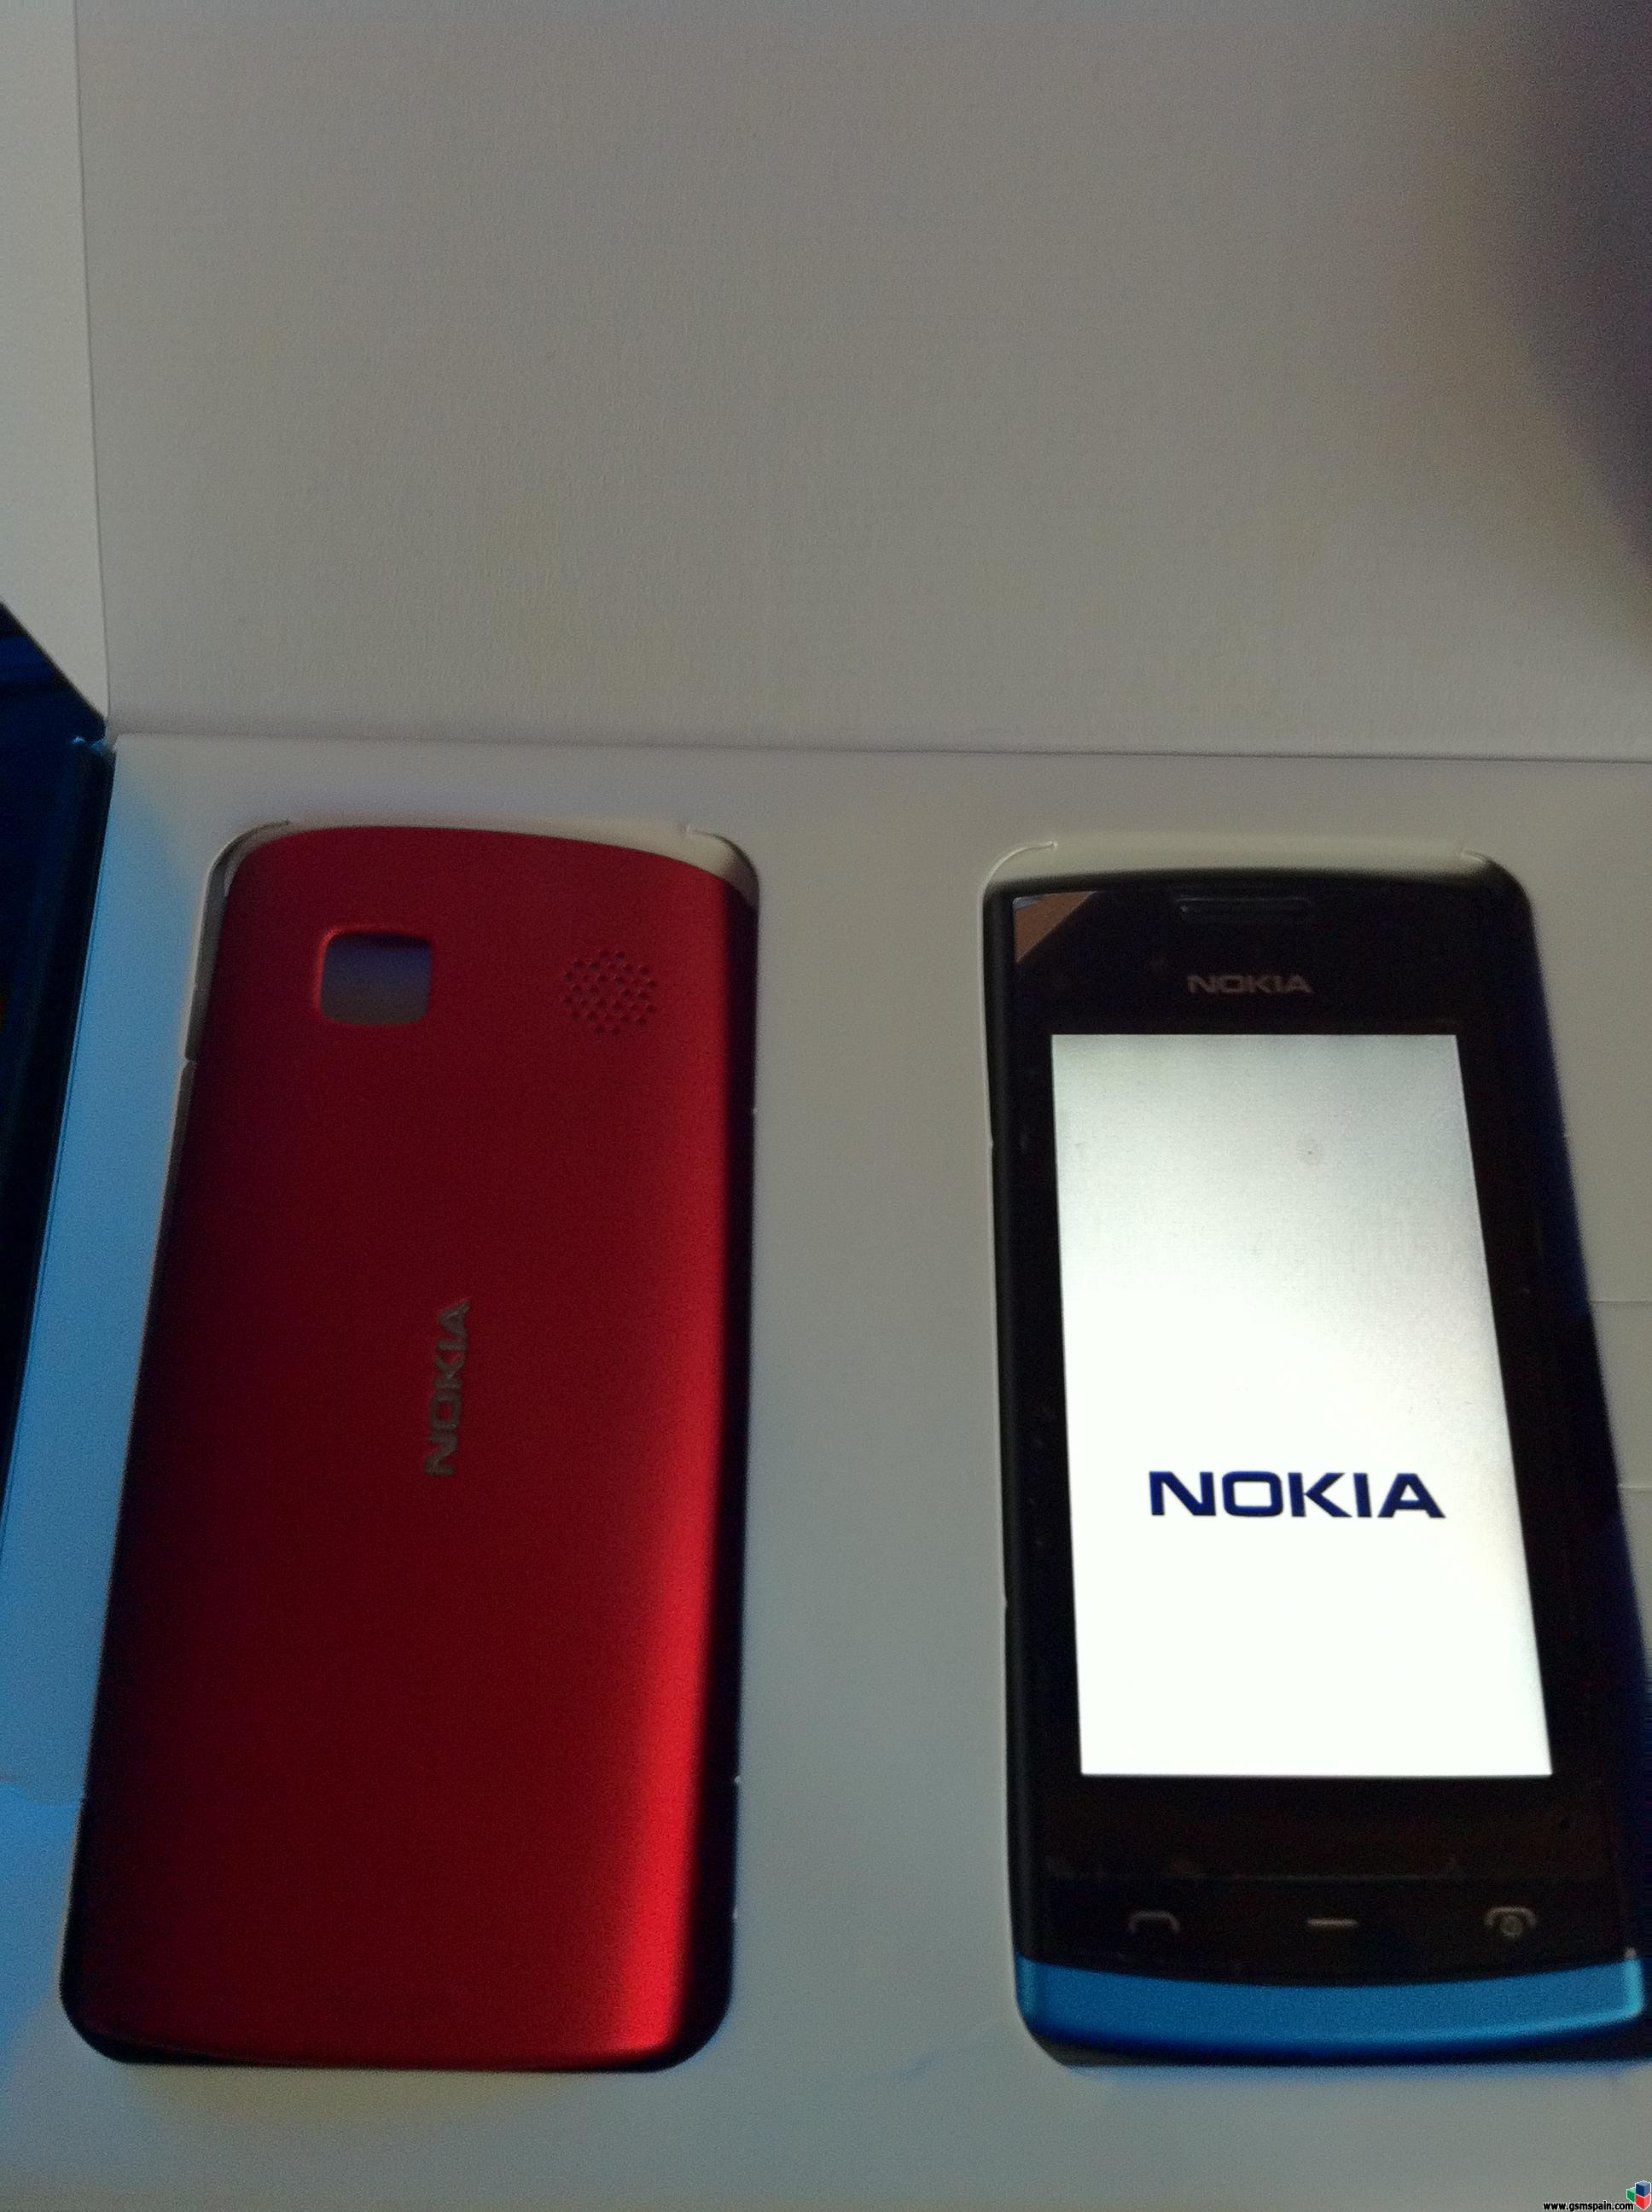 [ayuda] Alguien Sabe Como Liberar Nokia 500 Gratis????